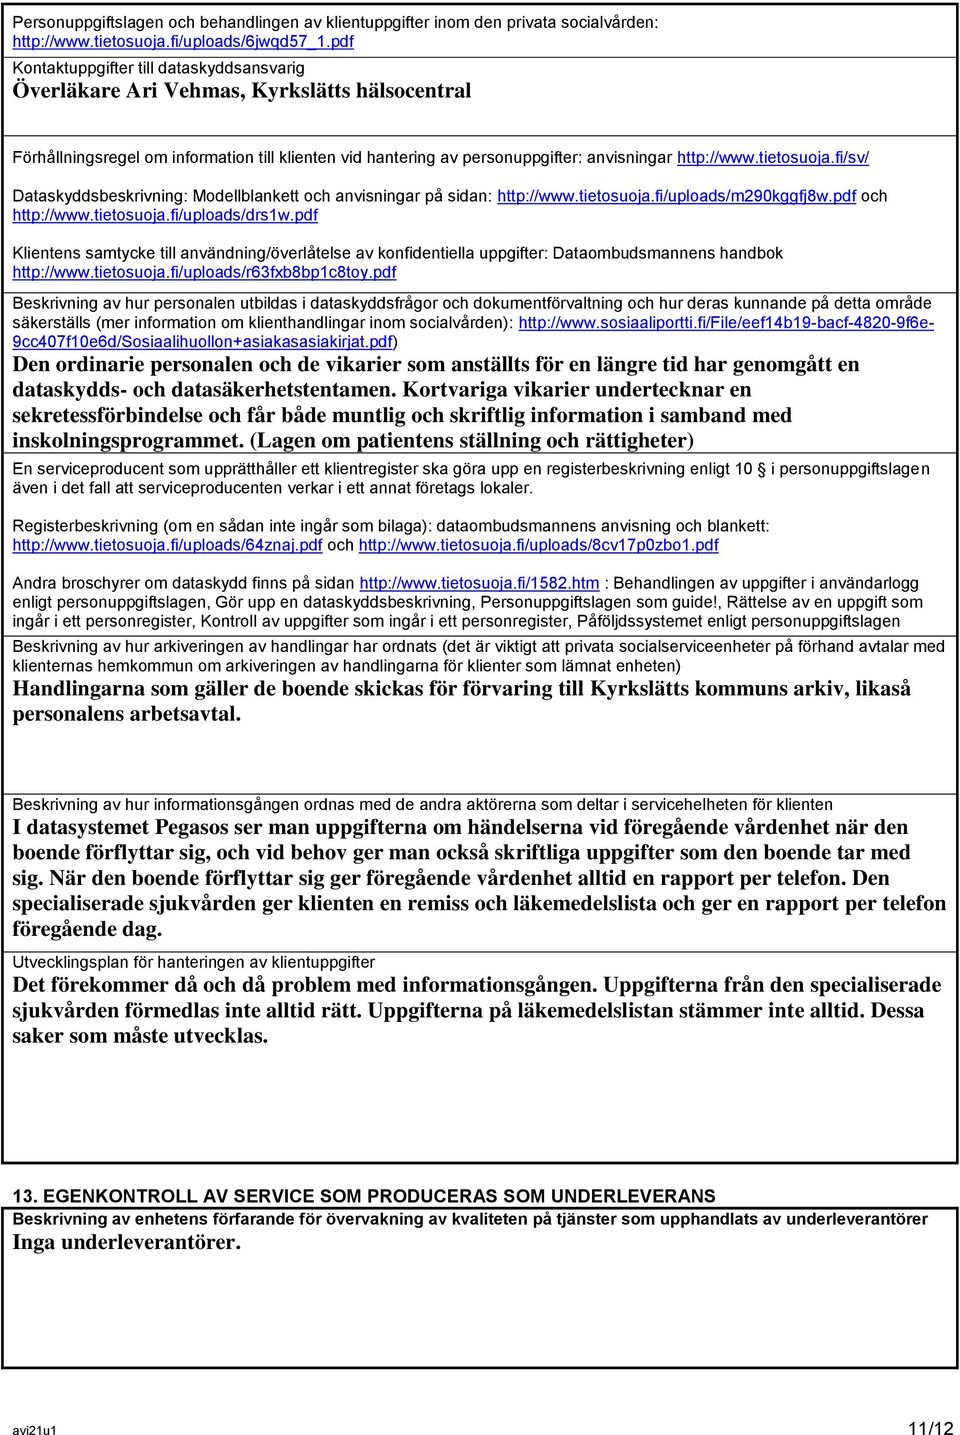 tietosuoja.fi/sv/ Dataskyddsbeskrivning: Modellblankett och anvisningar på sidan: http://www.tietosuoja.fi/uploads/m290kggfj8w.pdf och http://www.tietosuoja.fi/uploads/drs1w.